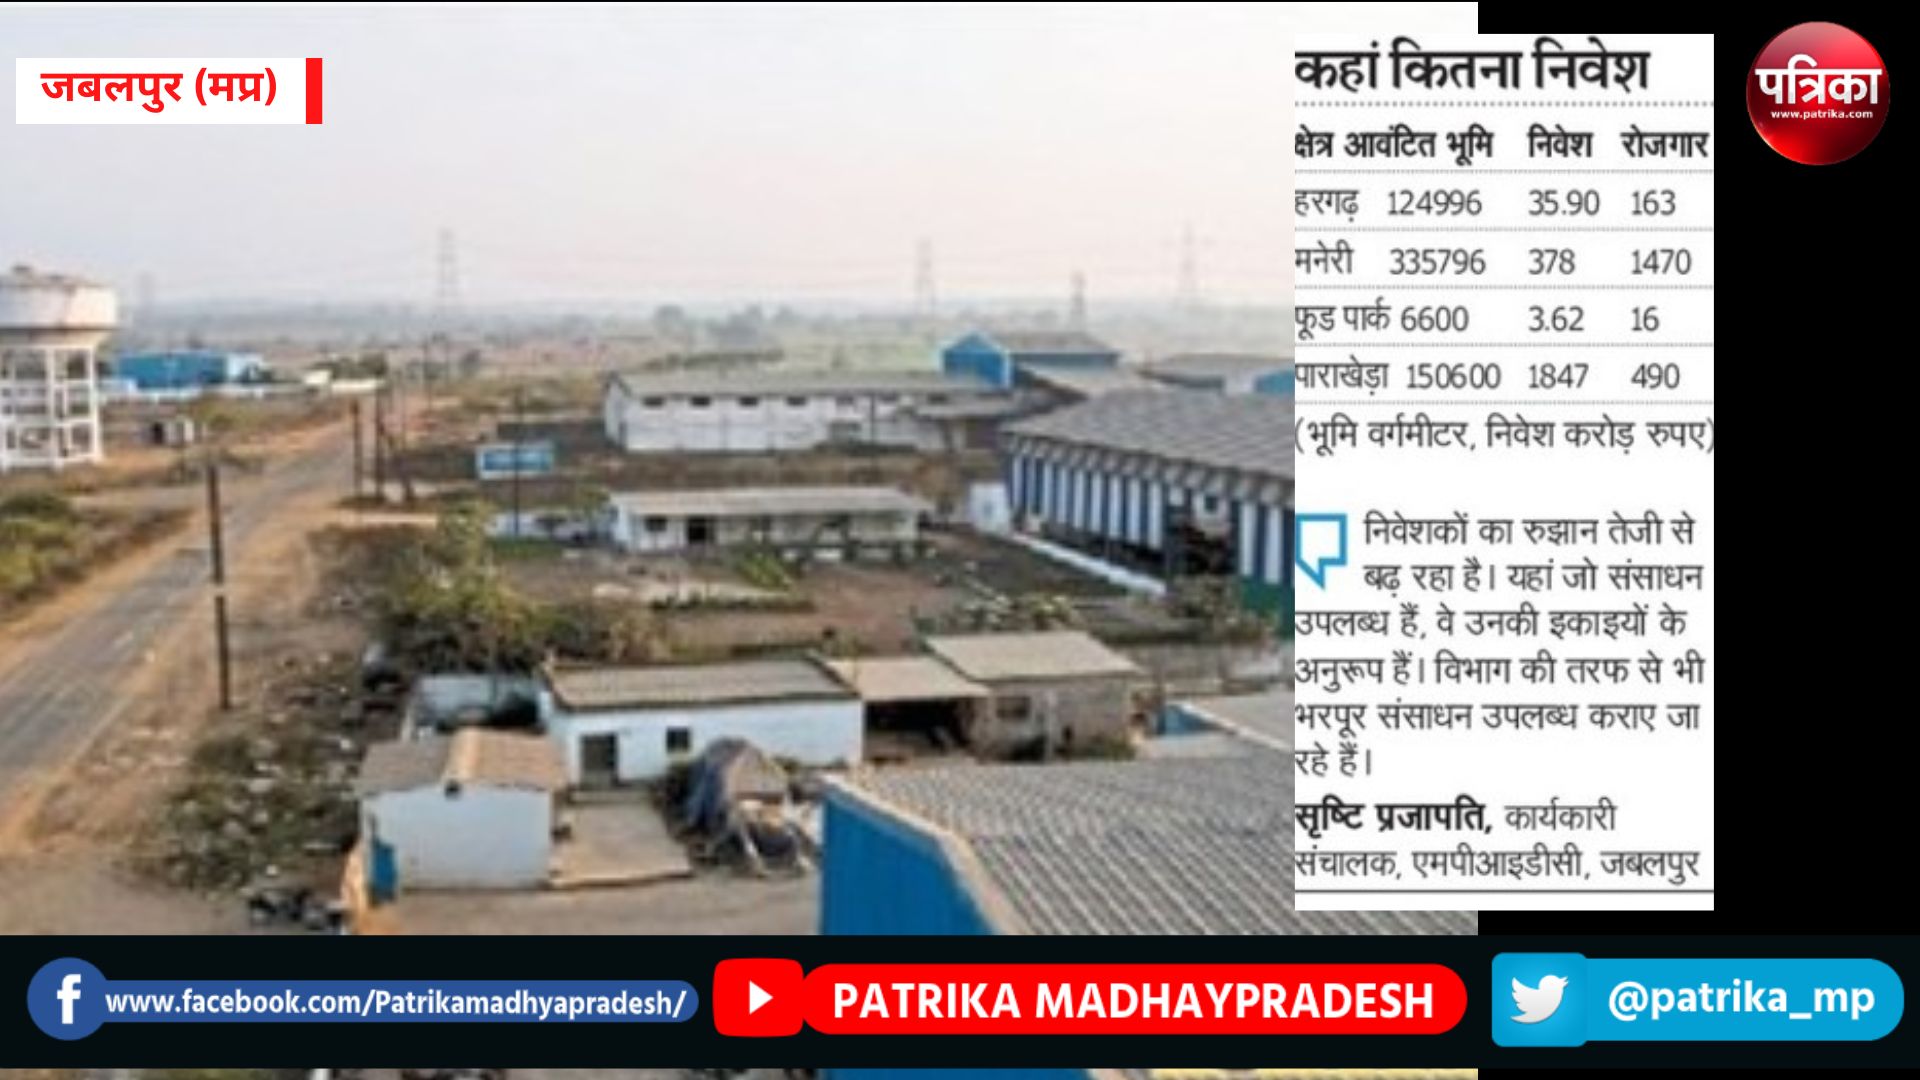 जबलपुर में CNG प्लांट सहित आ रहीं 102 कंपनियां, 2 हजार करोड़ का होगा निवेश - image